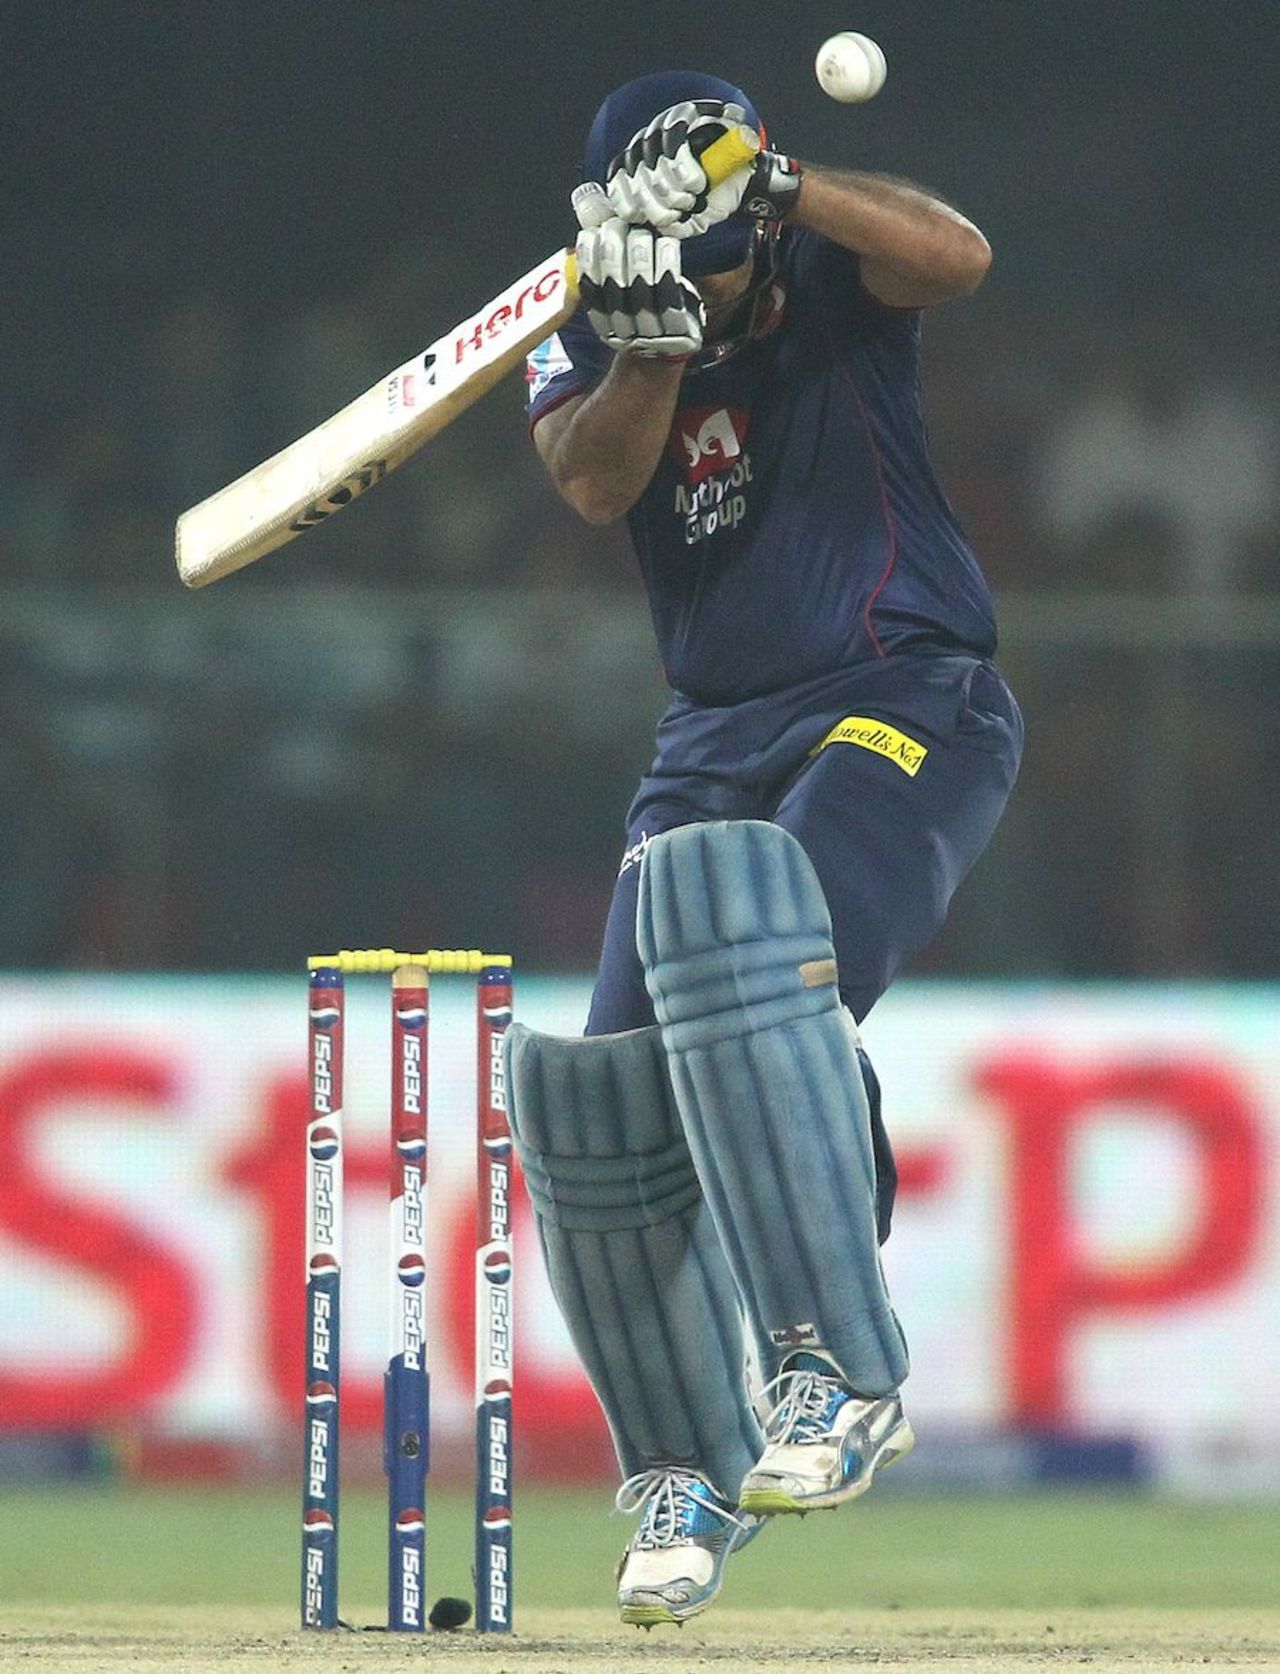 Virender Sehwag avoids a short ball, Delhi Daredevils v Chennai Super Kings, IPL, Delhi, April 18, 2013